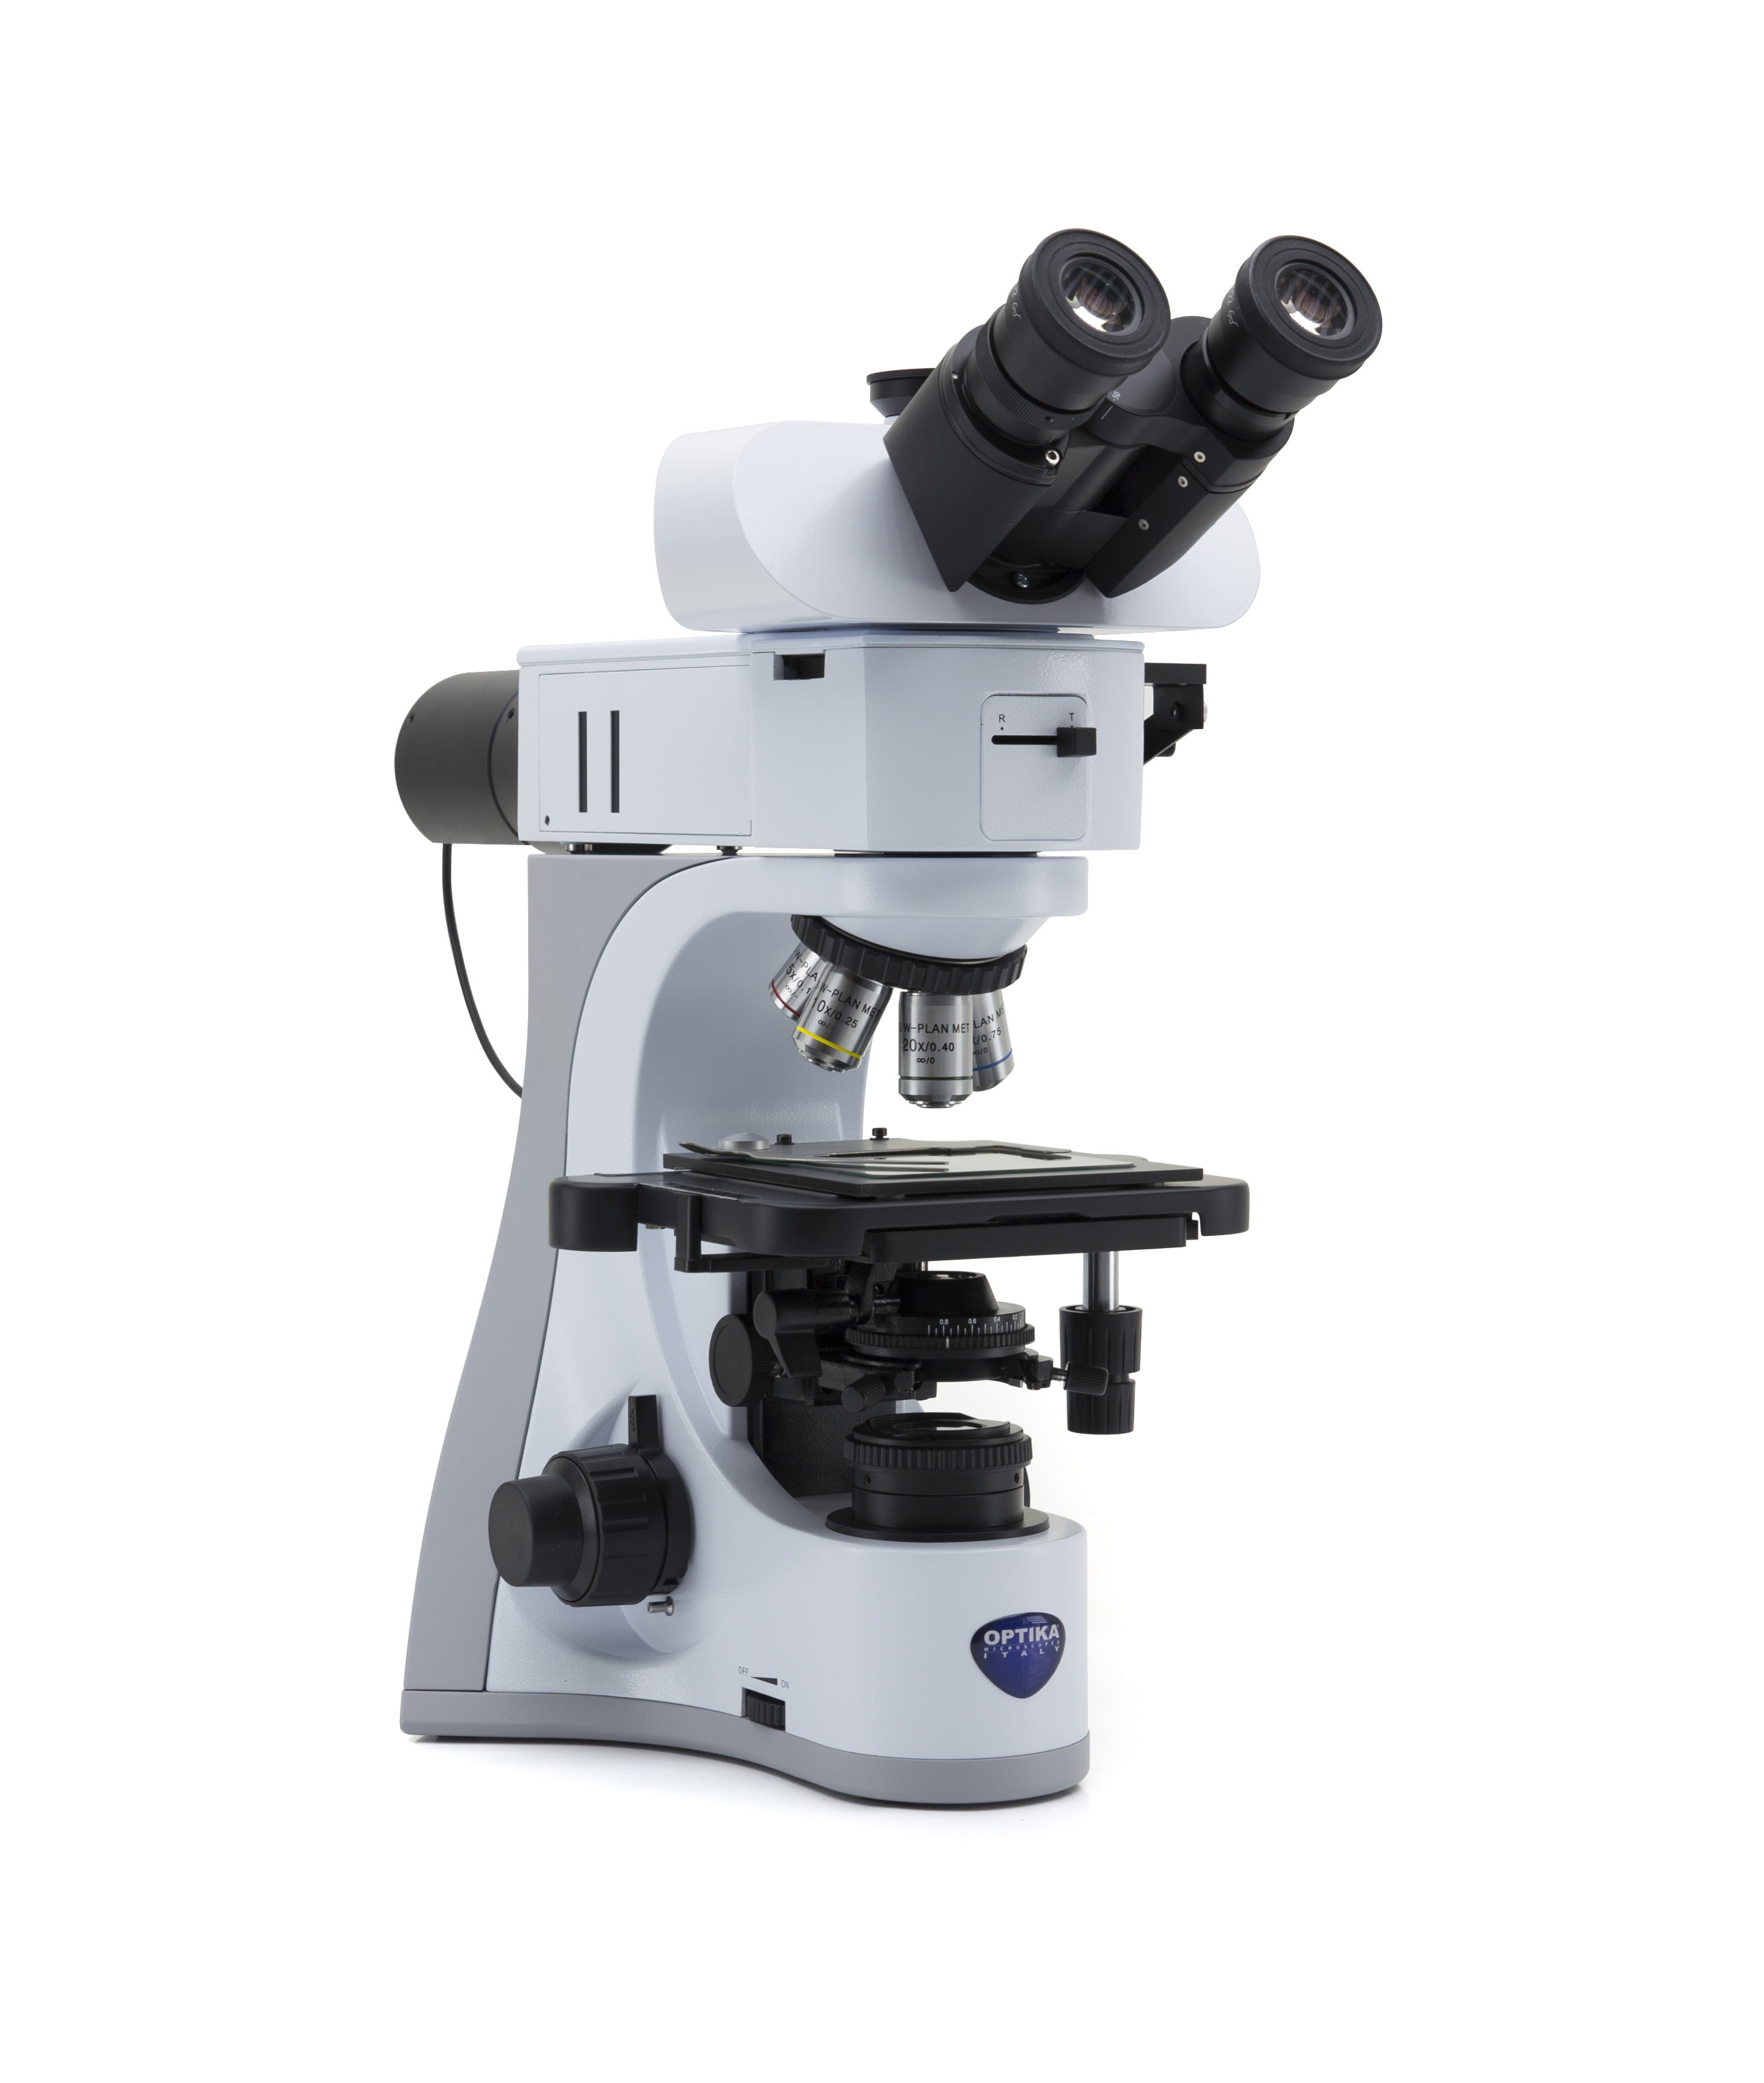 กล้องจุลทรรศน์แบบแสงตกกระทบสำหรับงานวัสดุและโลหะวิทยา (Metallurgical Upright Microscope) ยี่ห้อ OPTIKA รุ่น B-510METR